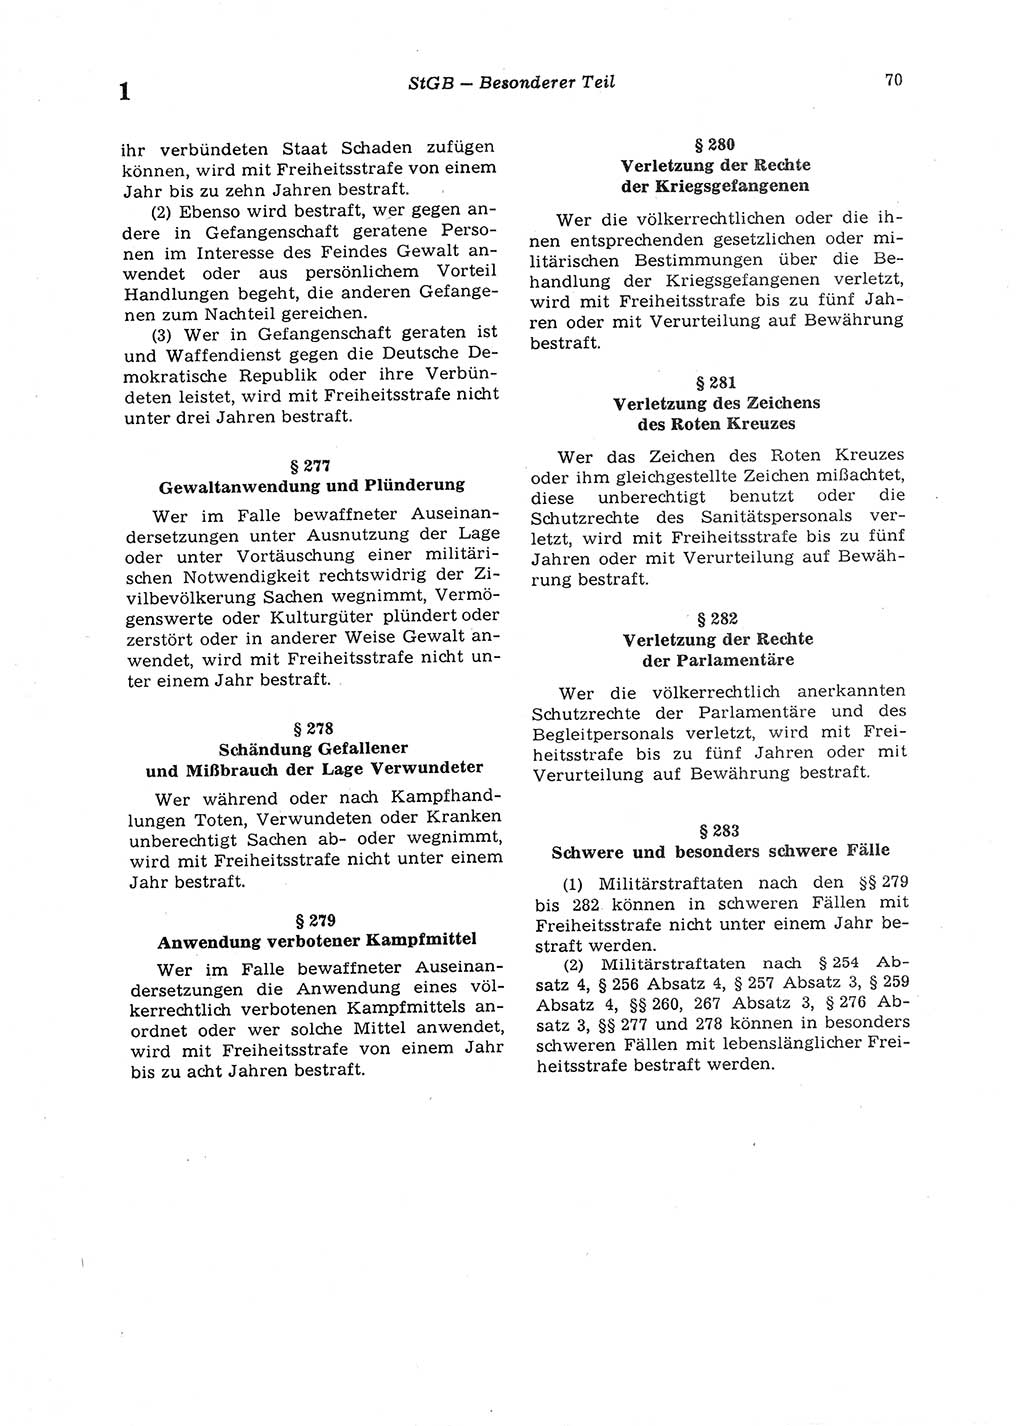 Strafgesetzbuch (StGB) der Deutschen Demokratischen Republik (DDR) 1987, Seite 70 (StGB DDR 1987, S. 70)